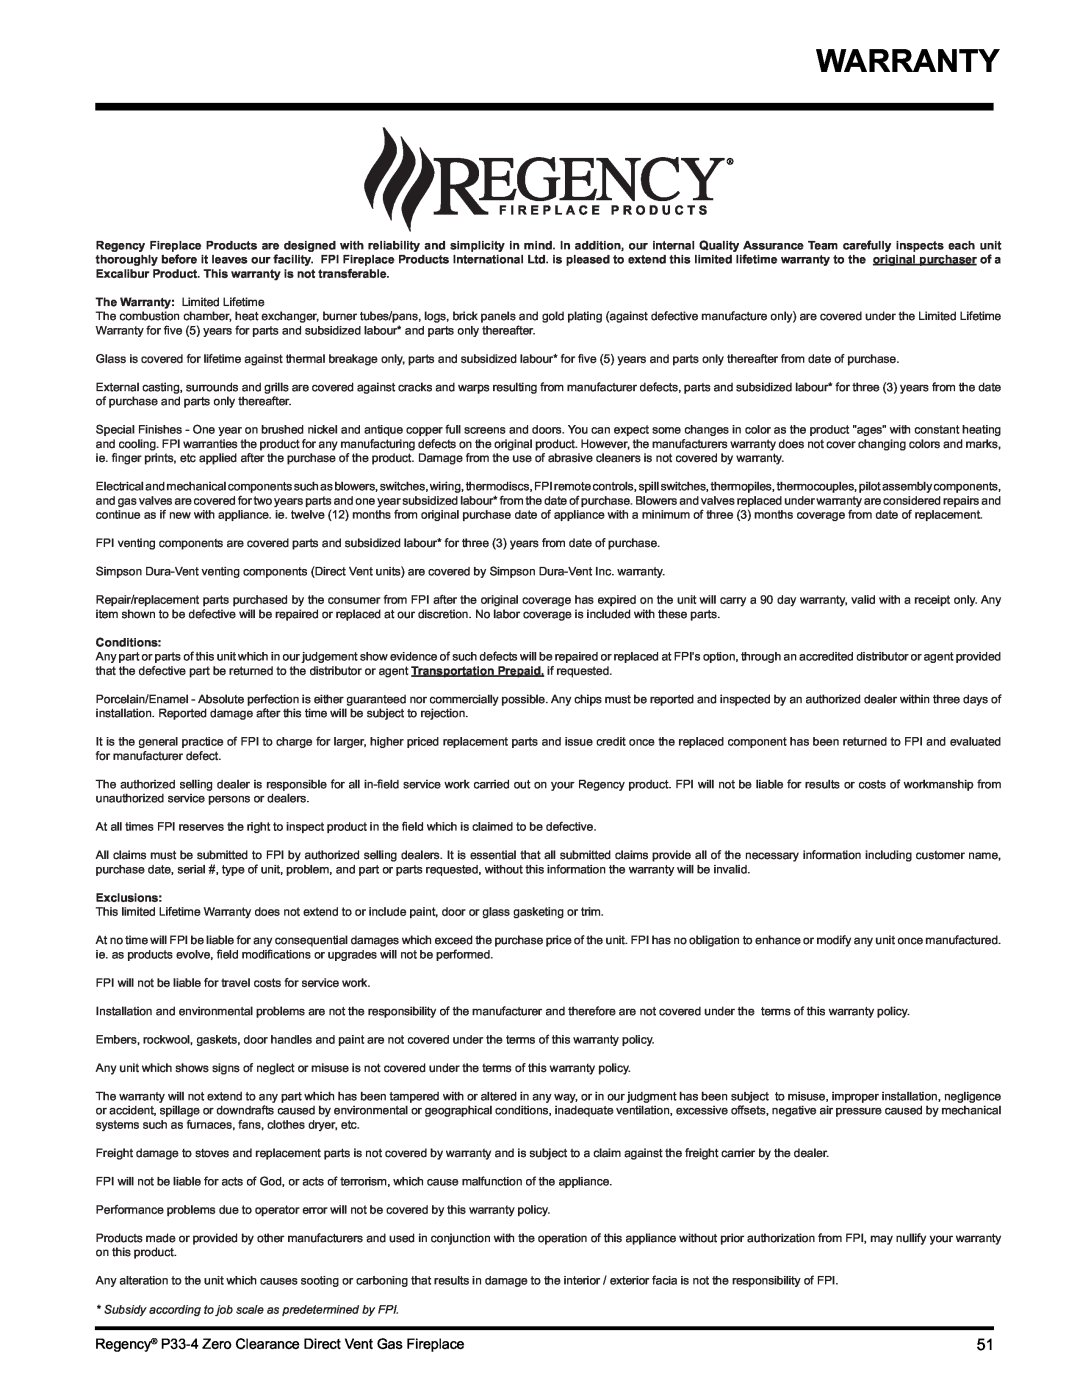 Regency P33-LP4 installation manual Warranty, Conditions, Exclusions 